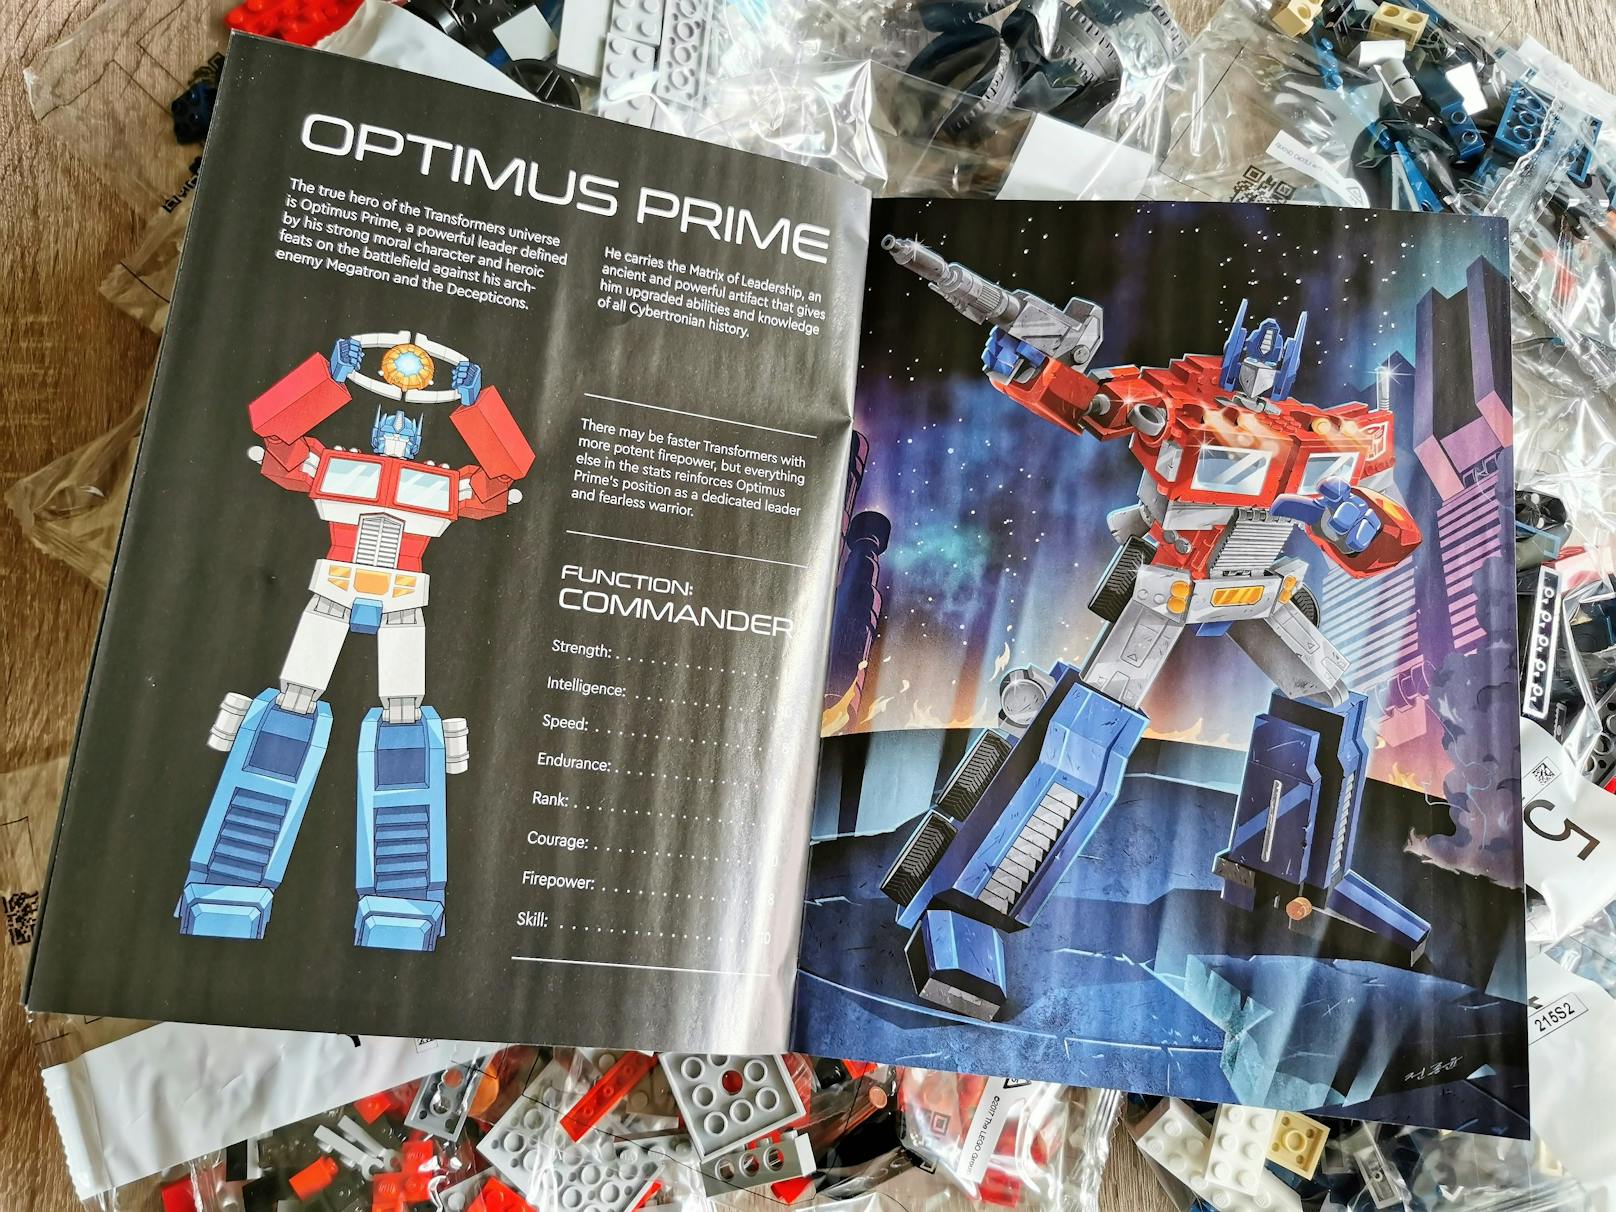 ...&nbsp;LEGO-Set 10302 namens "Oprimus Prime" den Anführer der Autobots aber als wirklich transformierbares Bastelset.&nbsp;Auffällig aber: Der Anführer der Autobots ist, ...